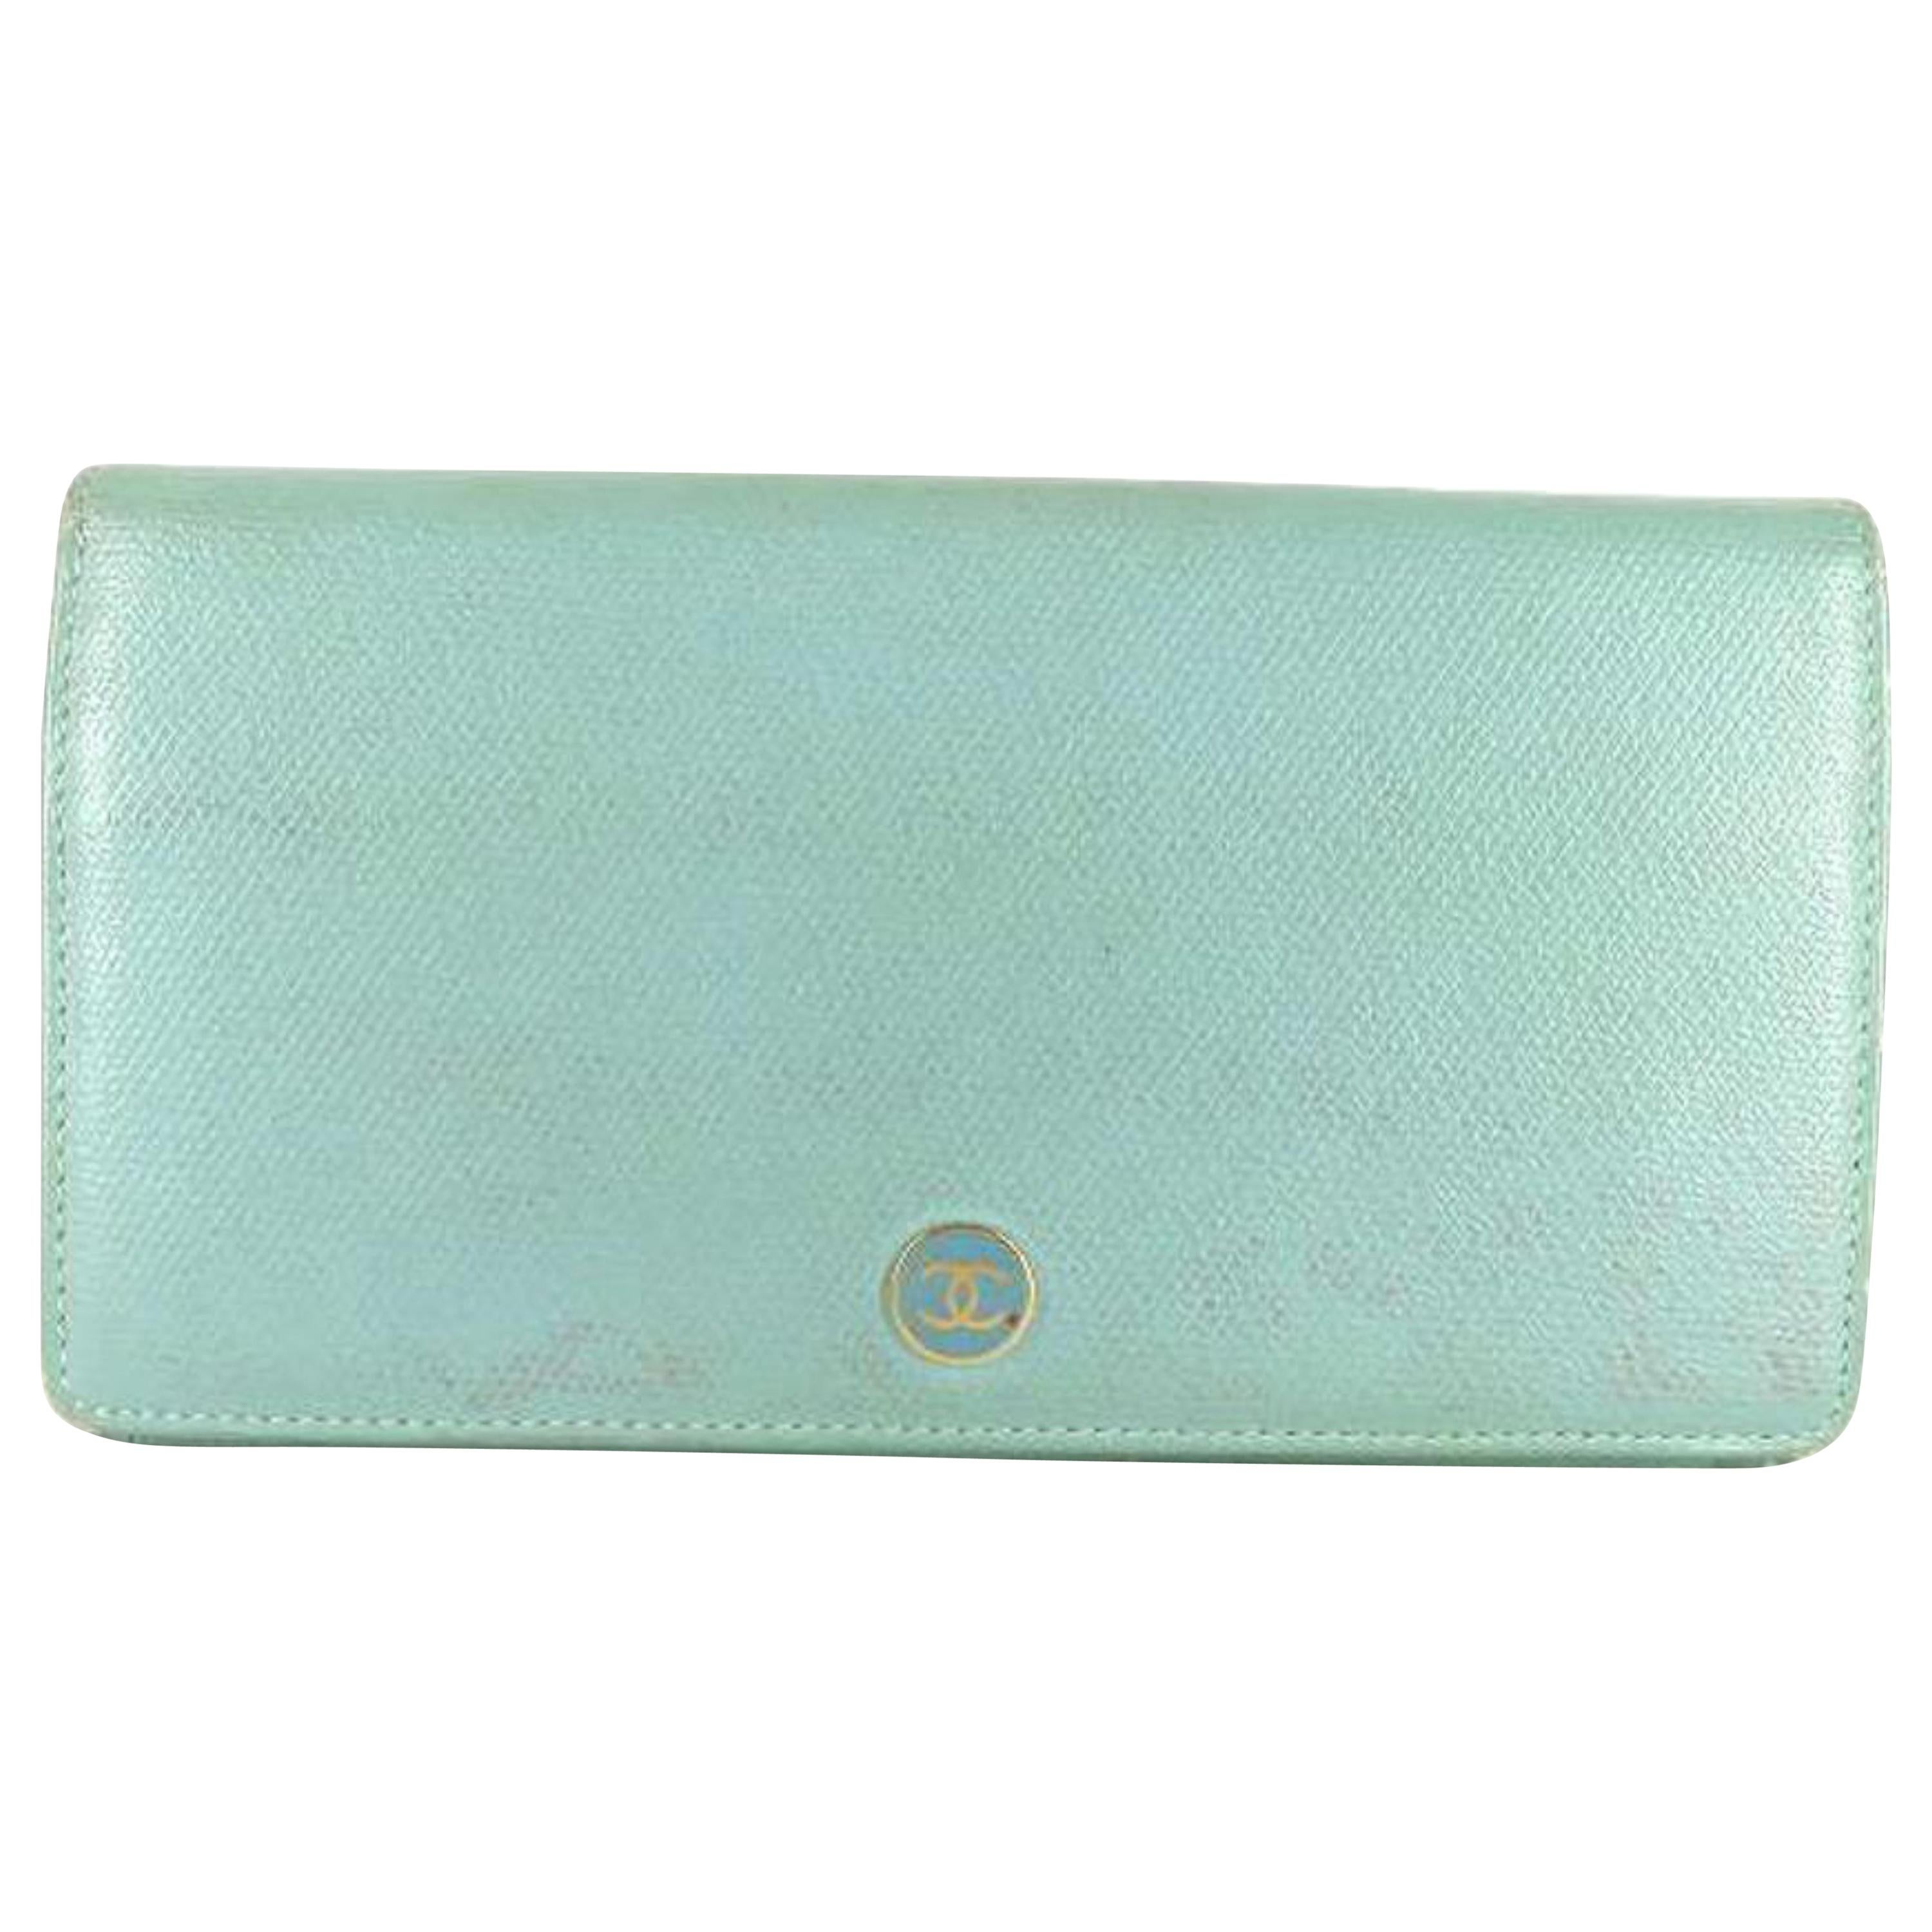 Chanel Blue Cc Button Line Flap Wallet 219996 For Sale